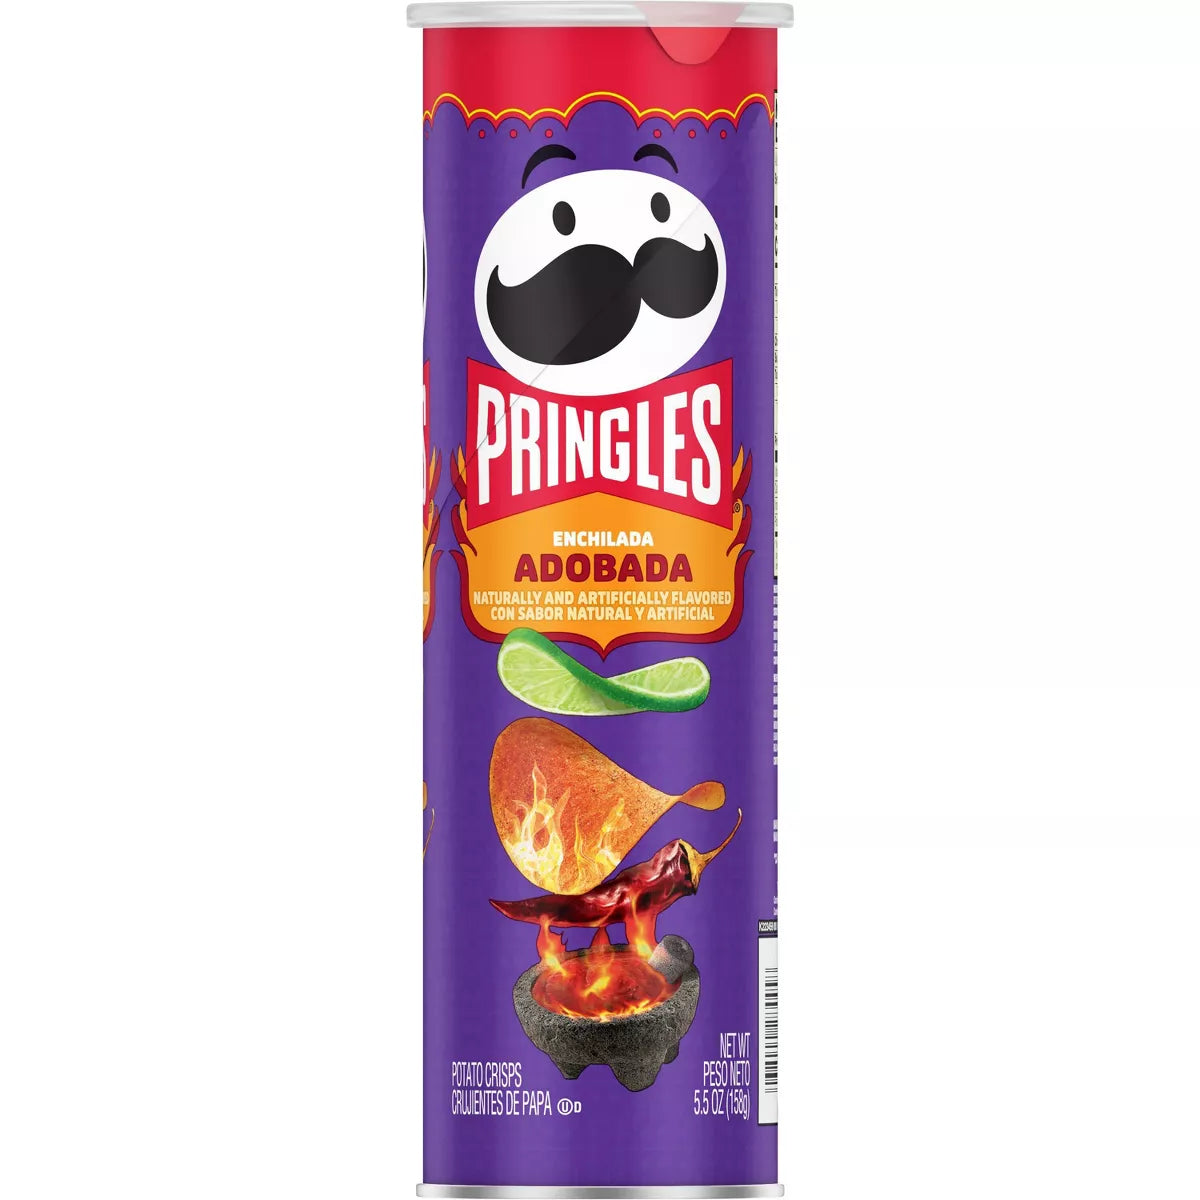 Pringles Adobada - 5.5oz